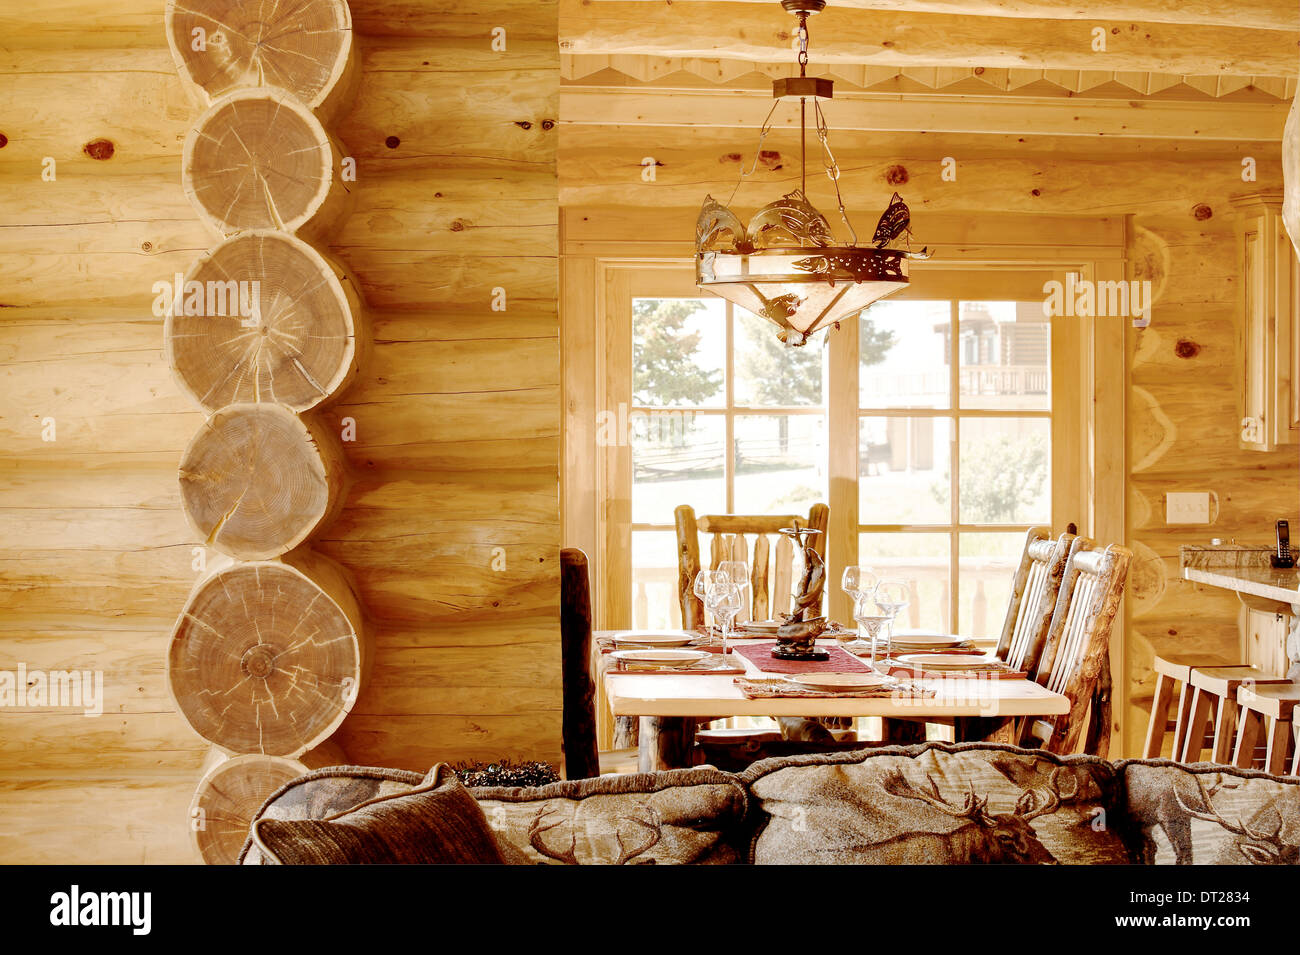 El comedor en una moderna cabaña de madera, con decoración rústica, y muebles. Foto de stock